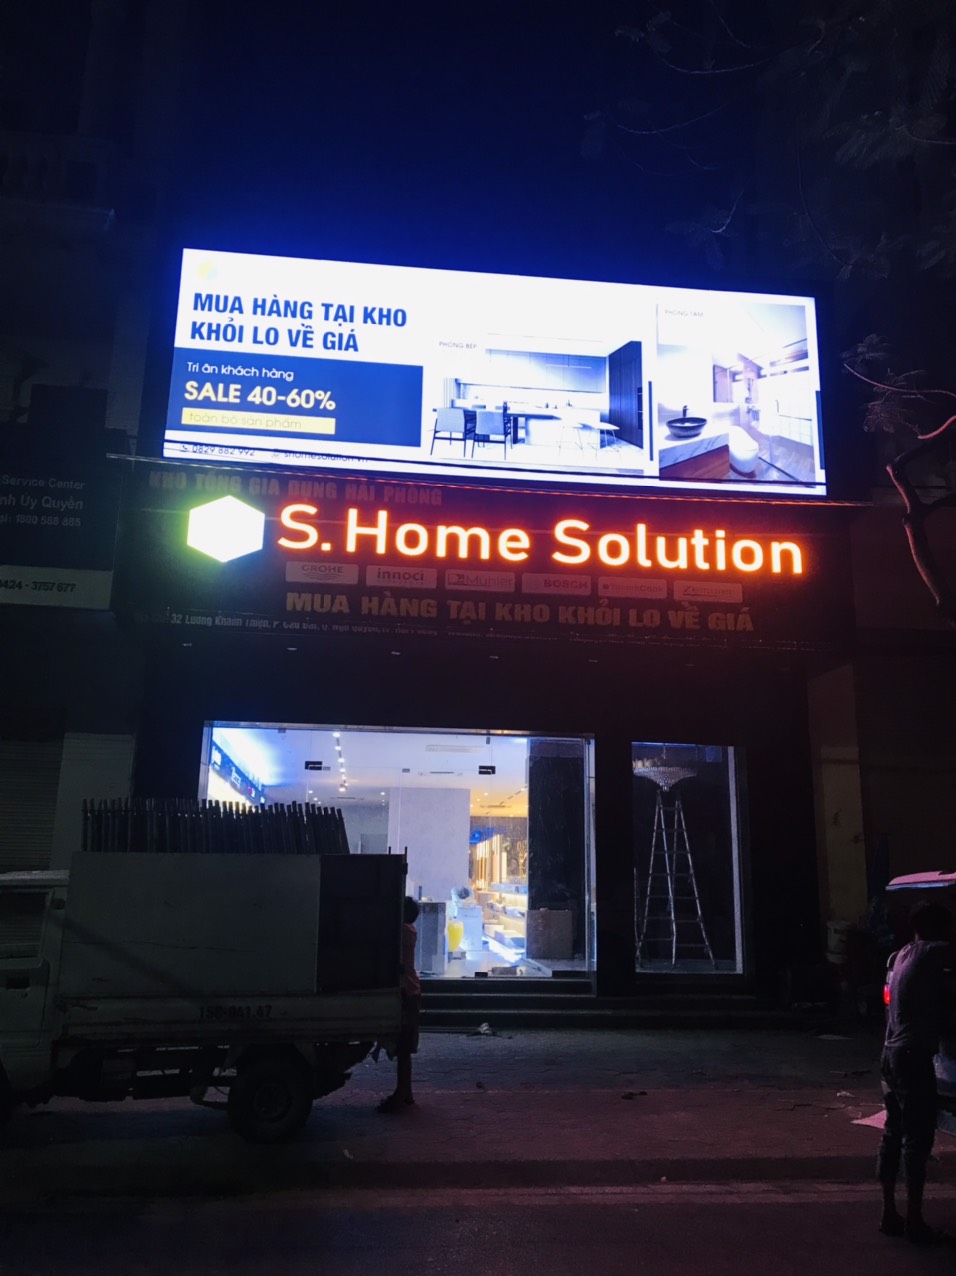 Thi công biển quảng cáo cho cửa hàng S.Home Solution